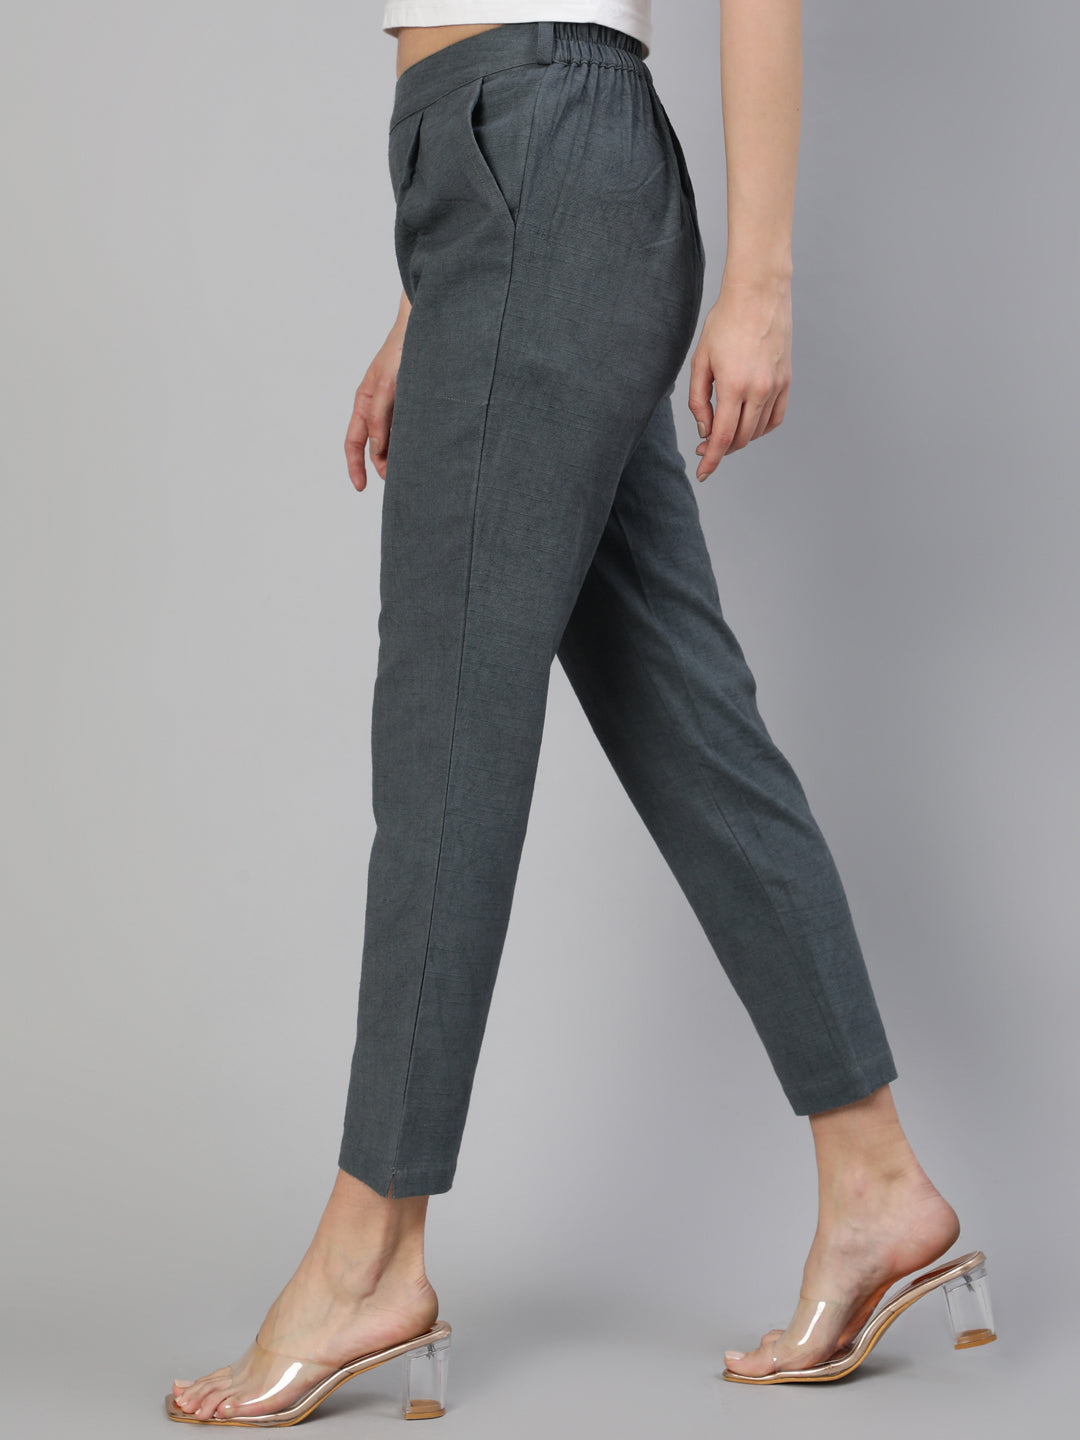 Buy Smart look pants for women